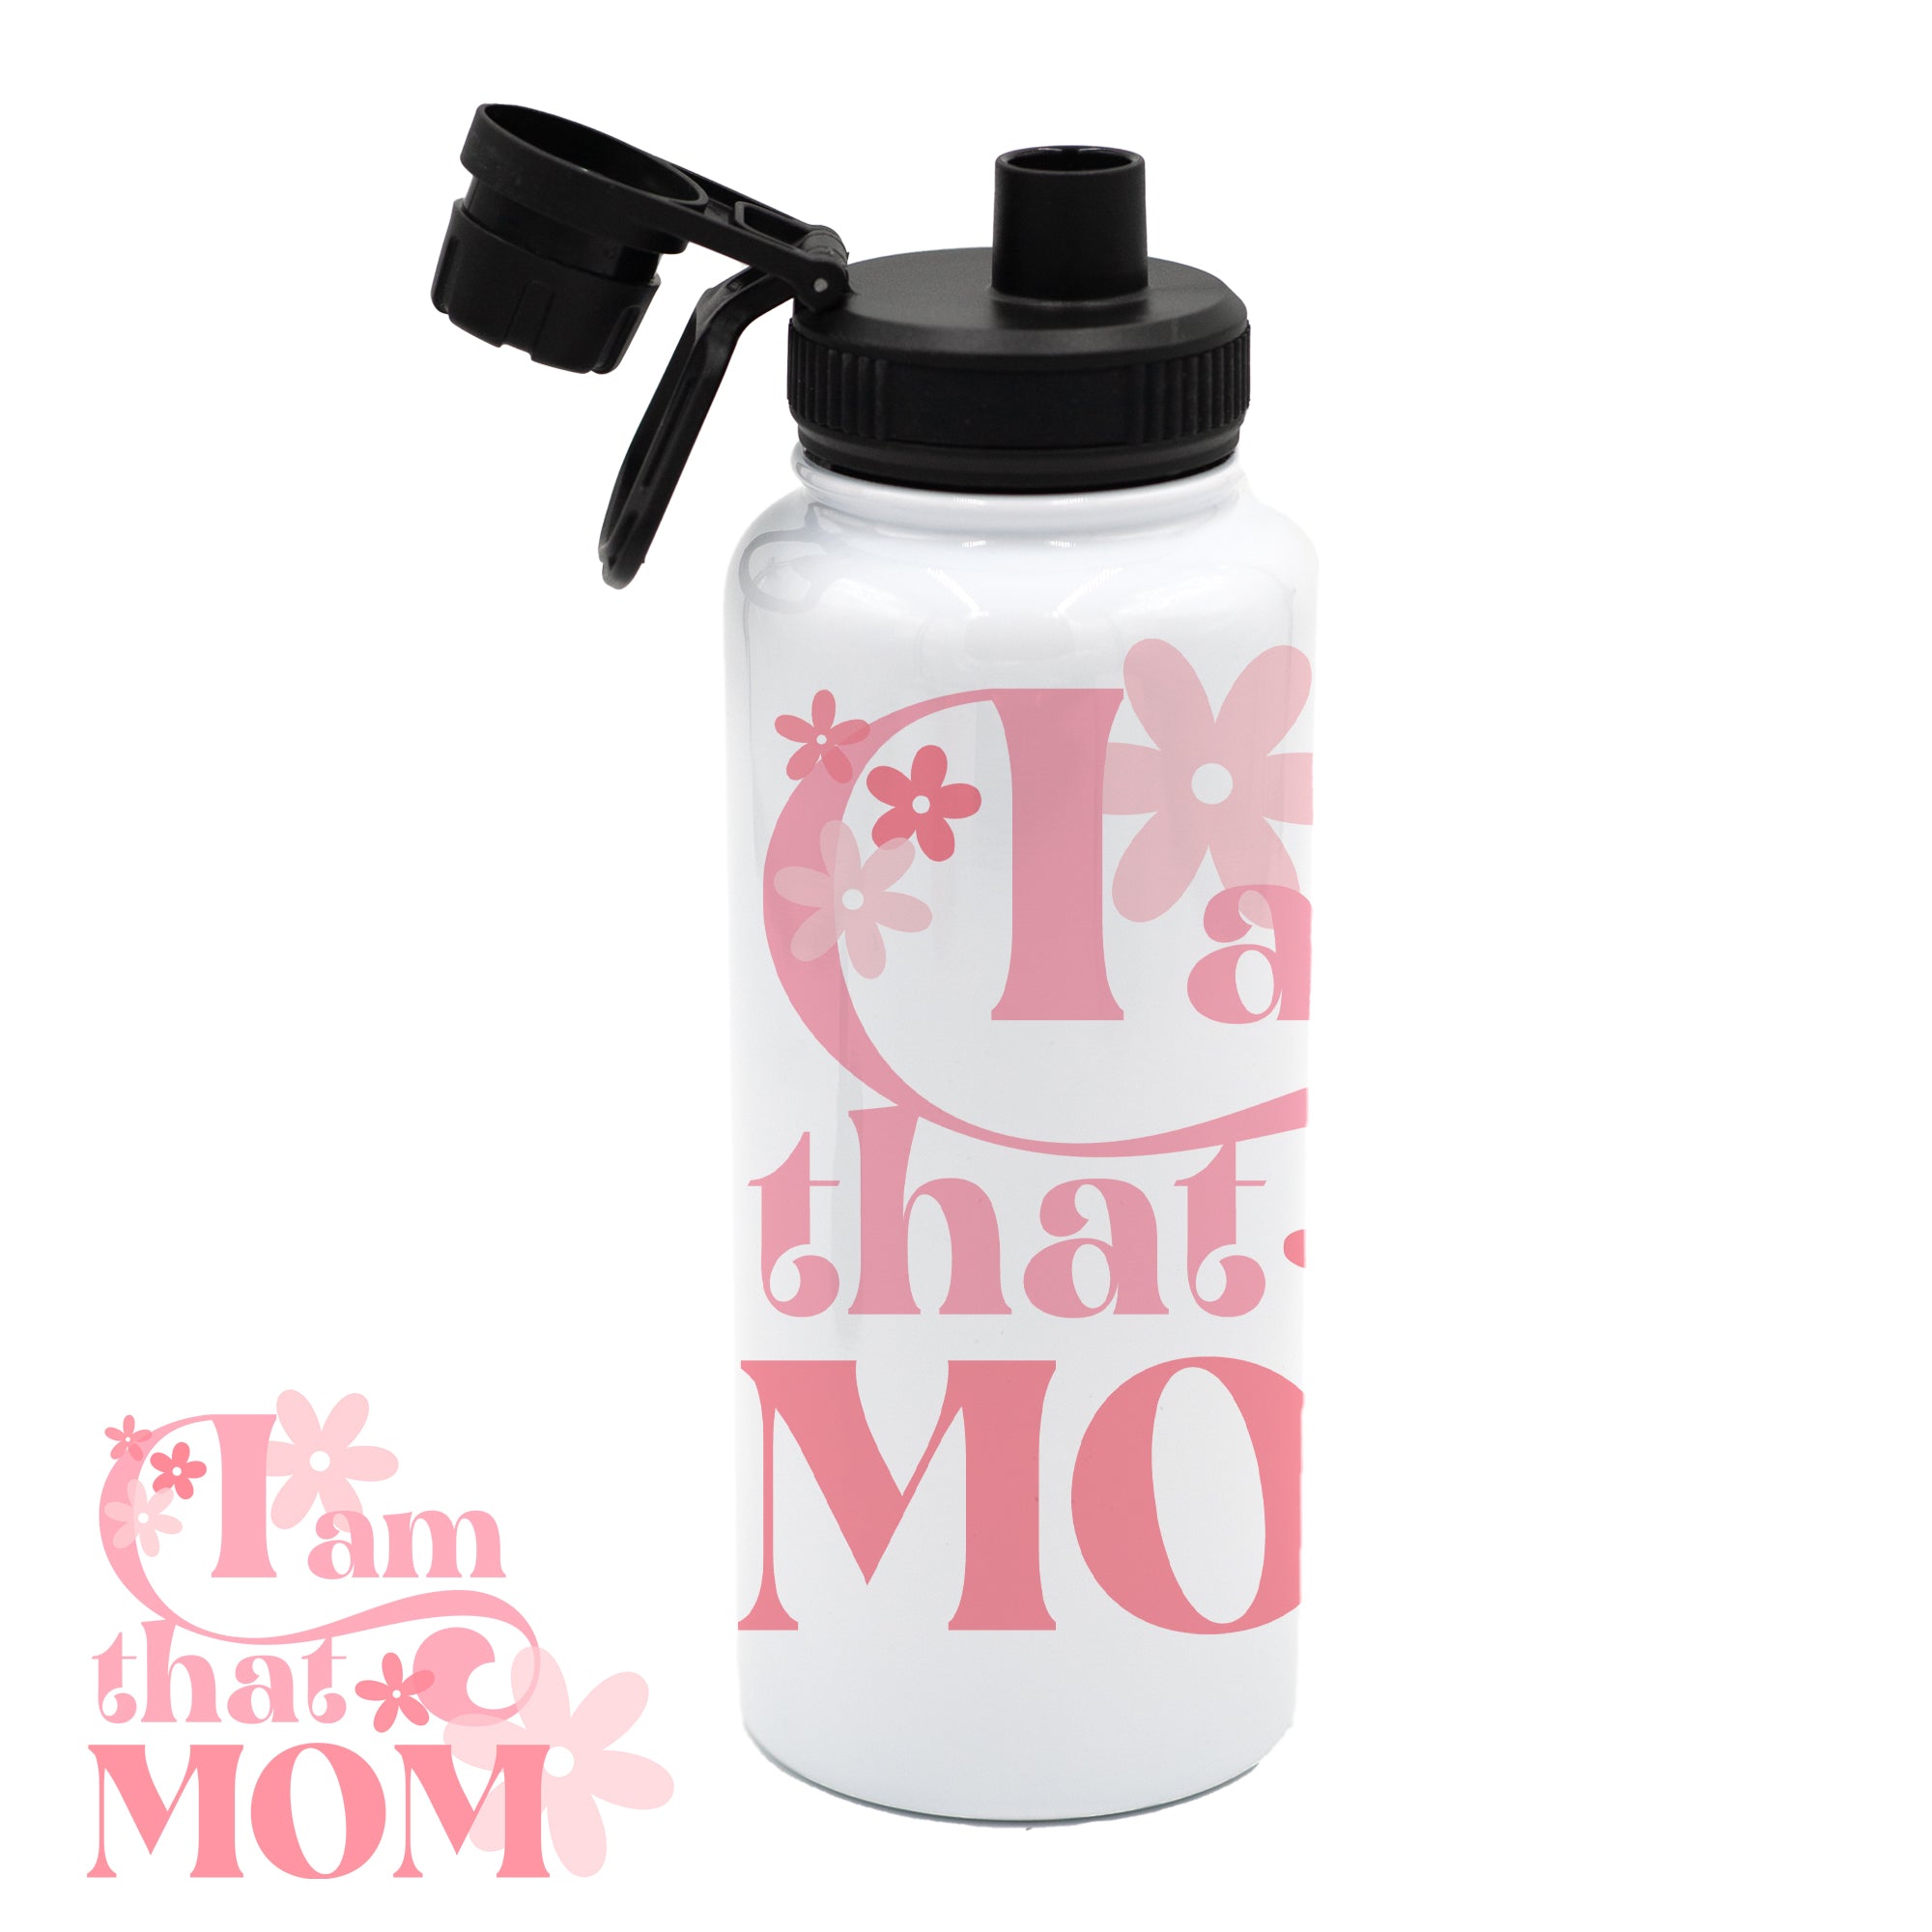 I am that MOM - Bottle/Tumbler/Mug